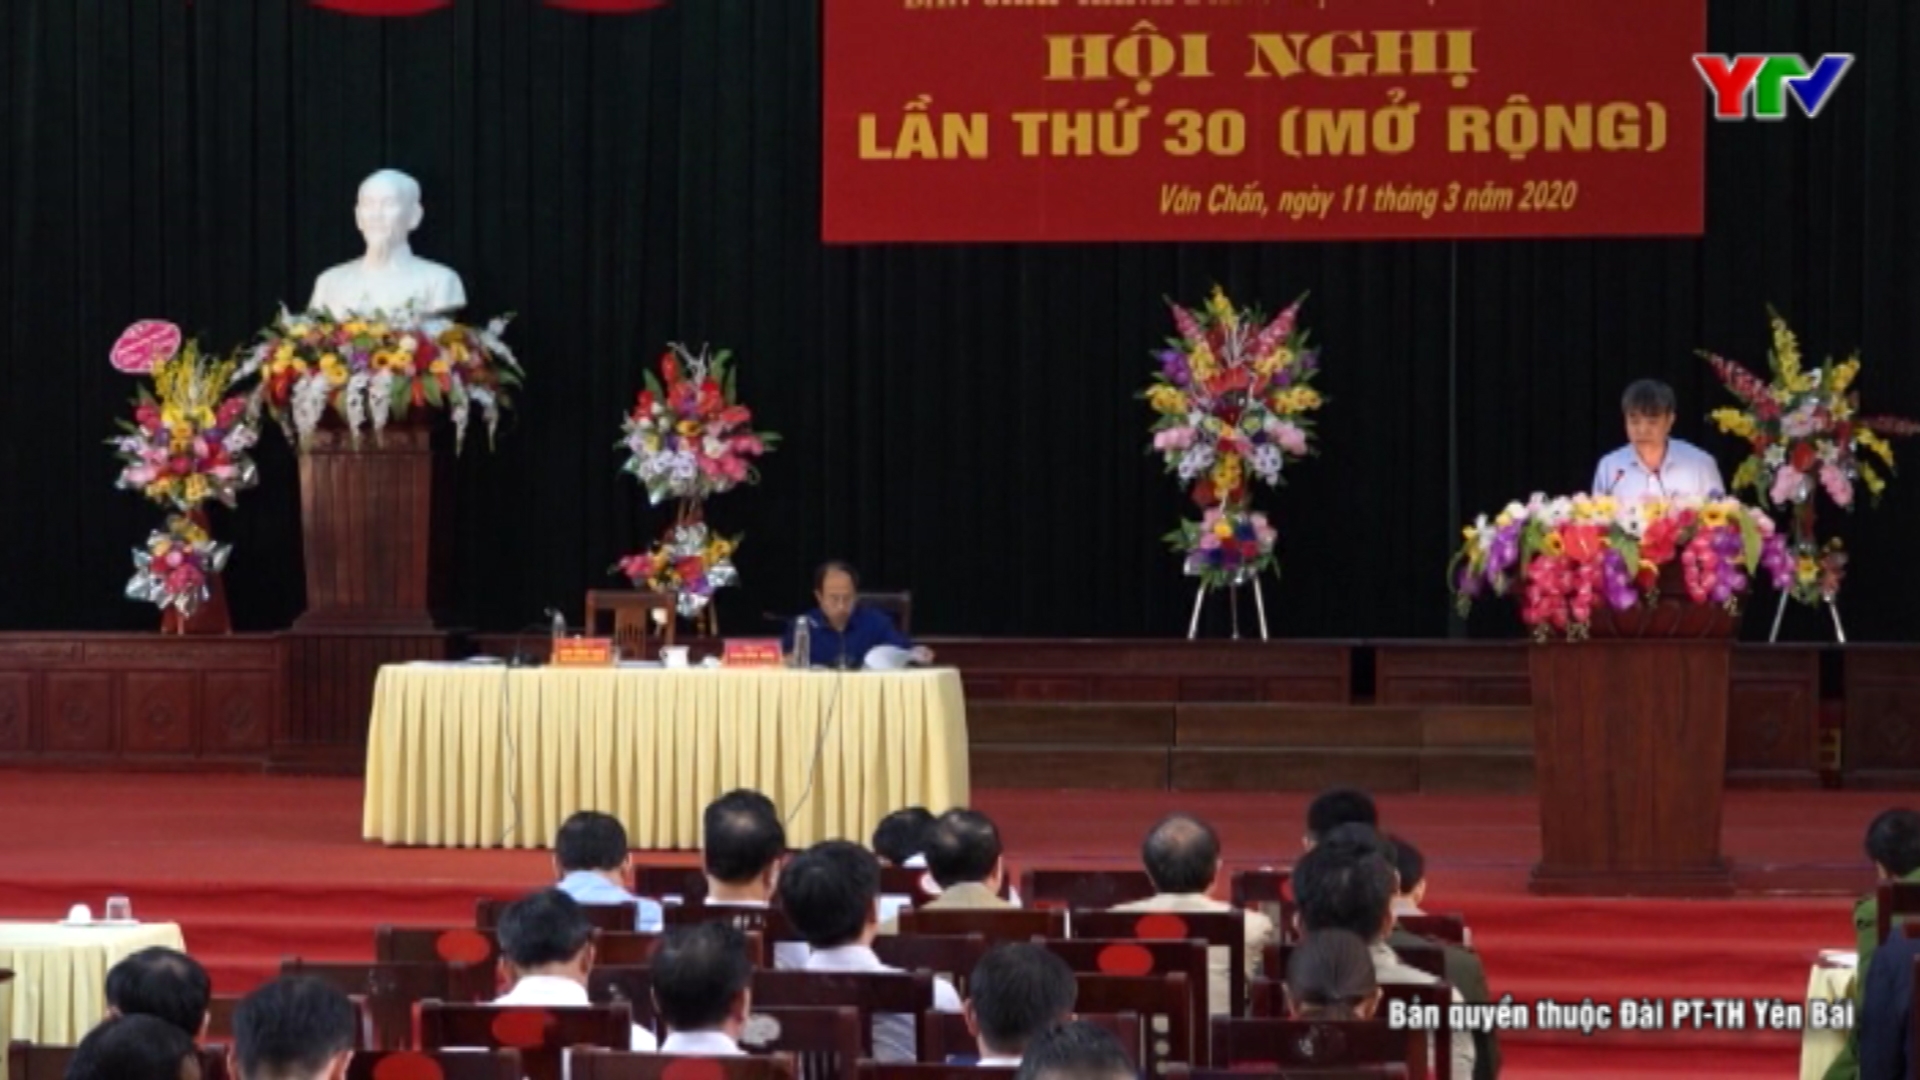 Hội nghị BCH Đảng bộ huyện Văn Chấn lần thứ 30 (mở rộng)